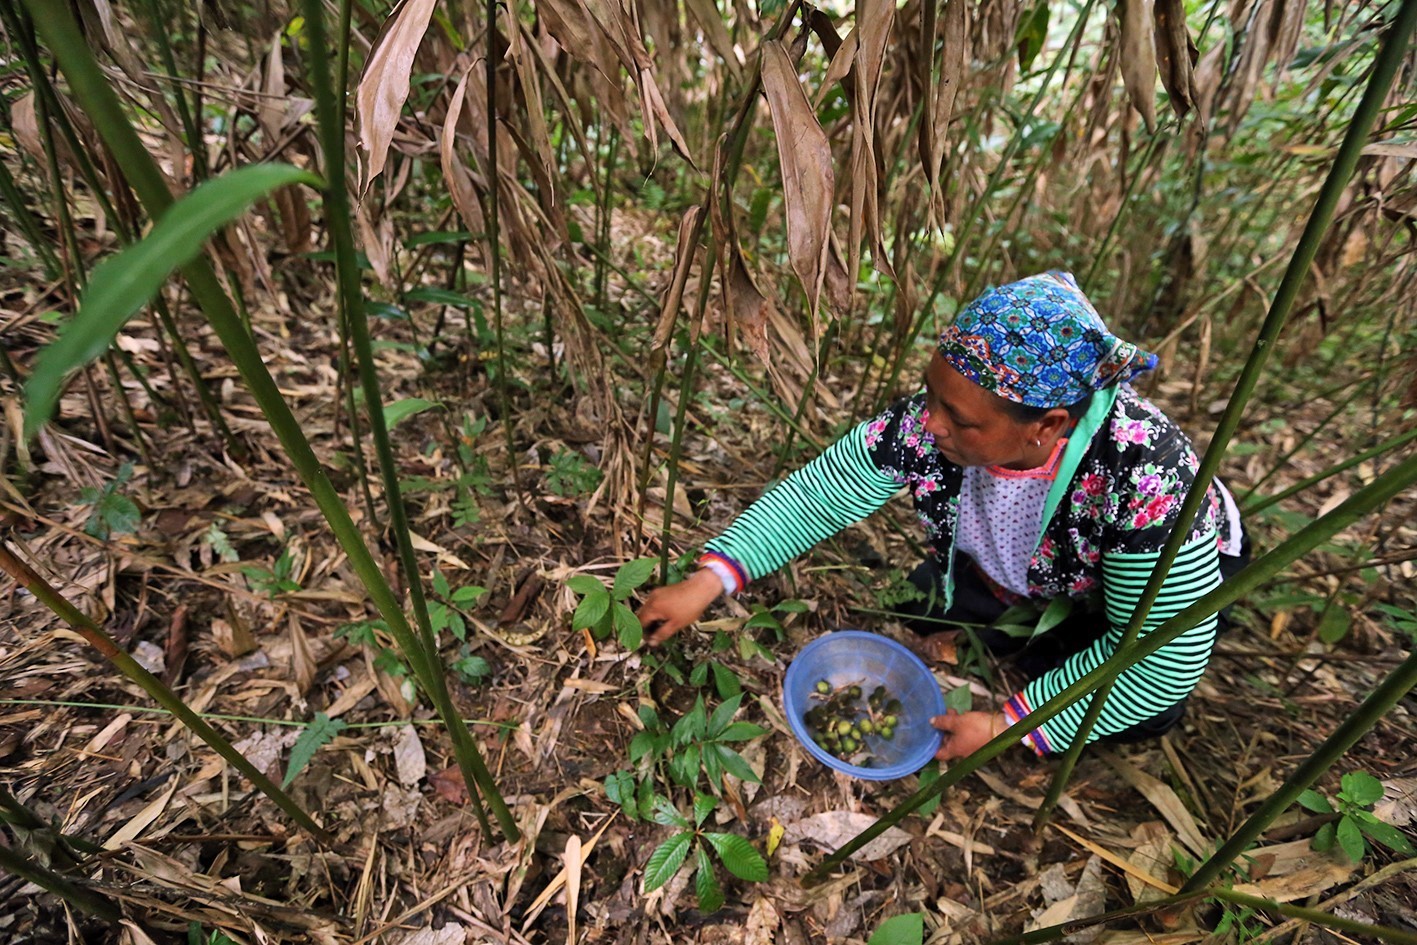 Trồng cây sa nhân đang là hướng đi mới trong phát triển nông nghiệp của nông dân vùng cao trên địa bàn tỉnh Điện Biên. (Ảnh: Phan Tuấn Anh/TTXVN)